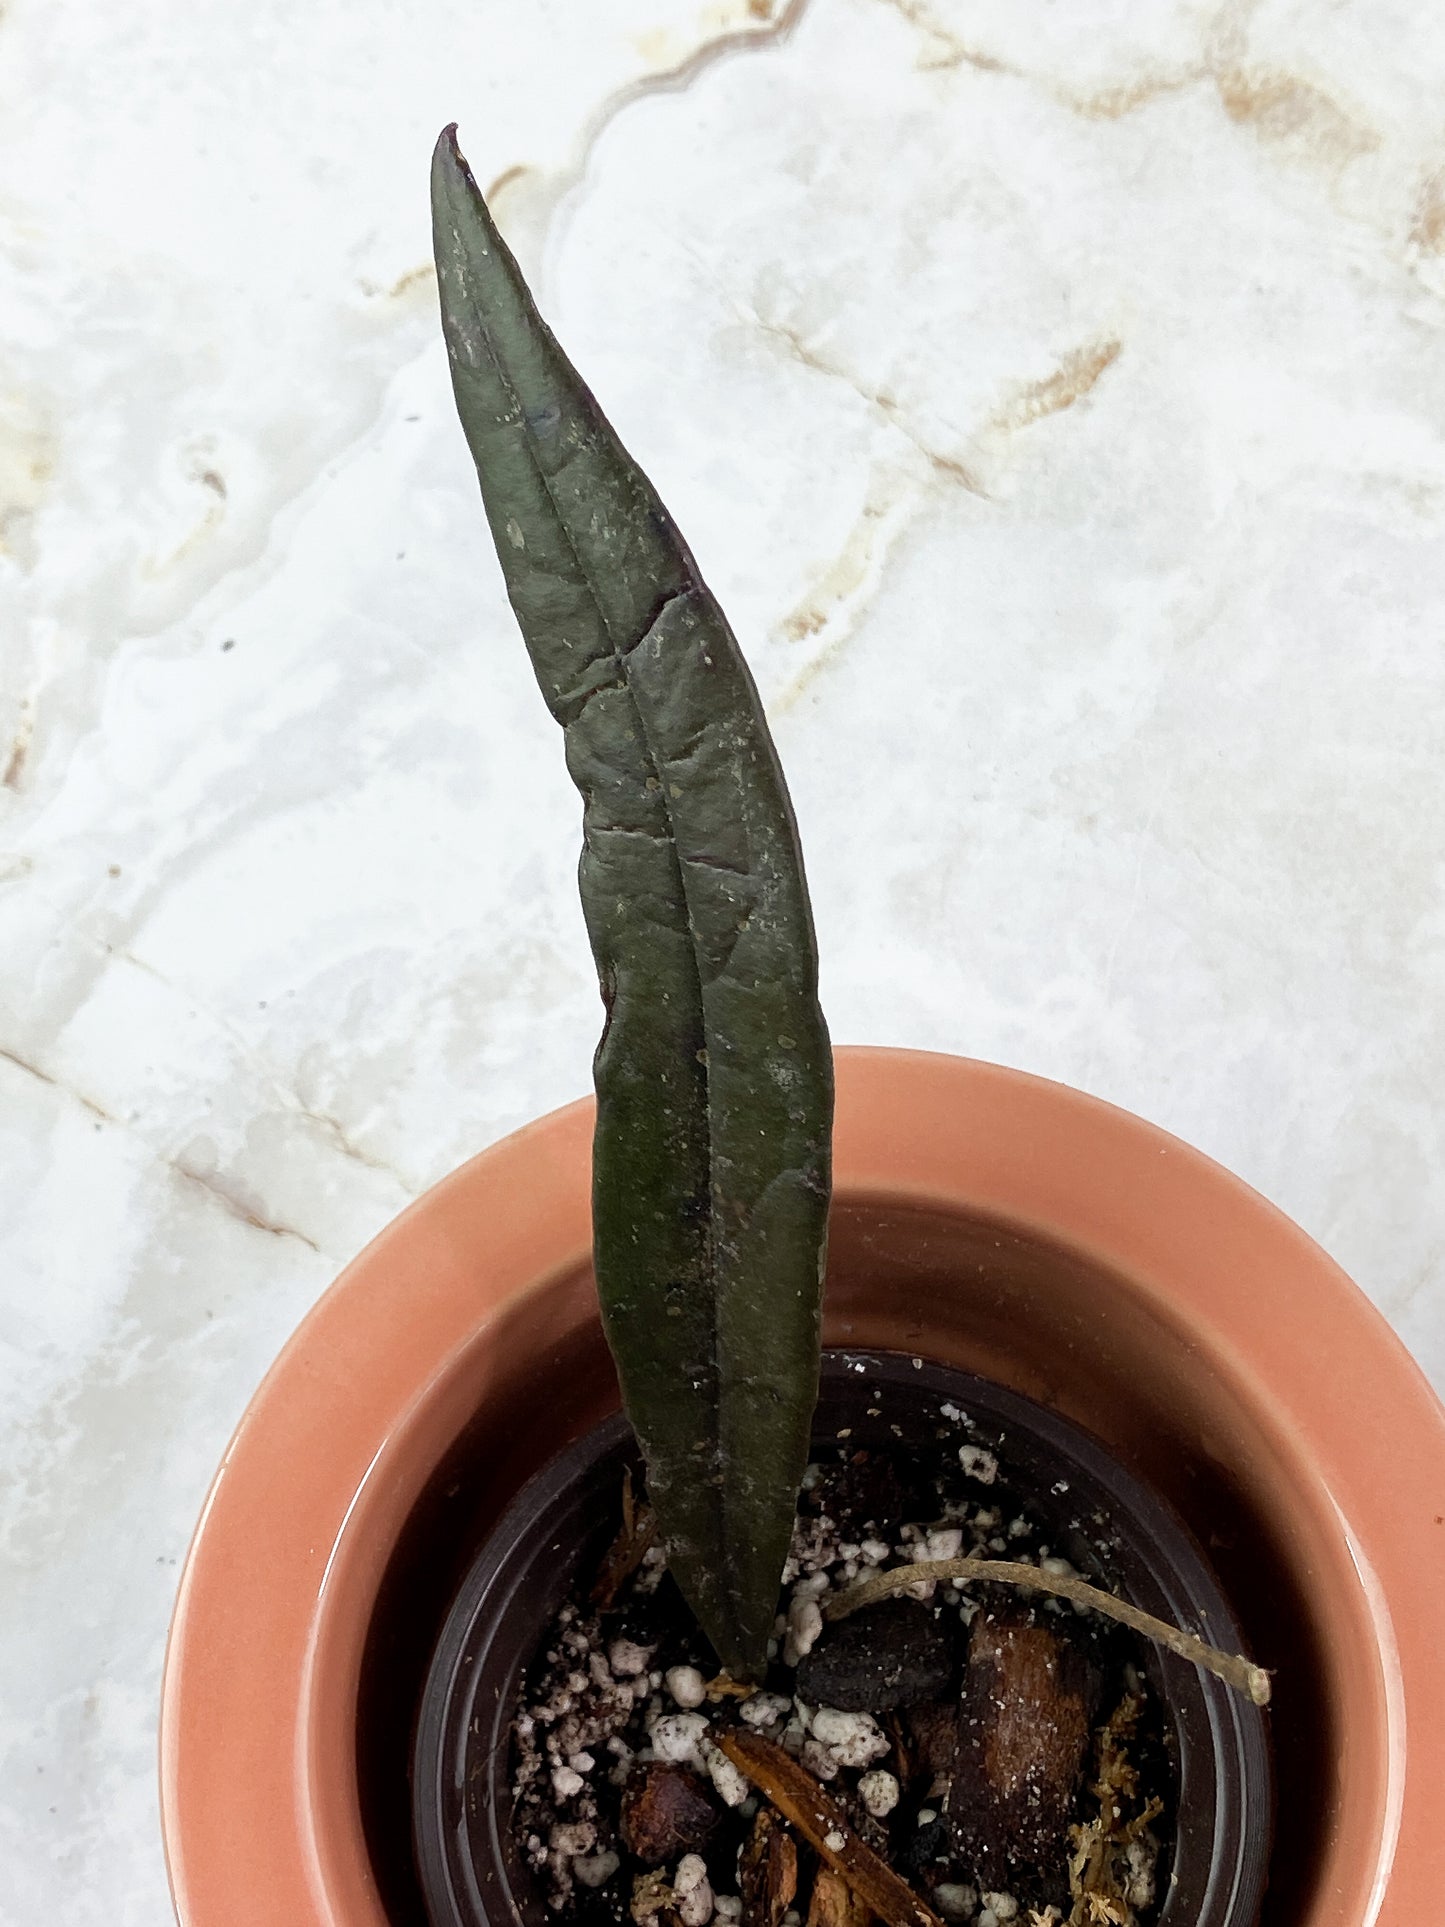 Hoya Sulawesiana 1 leaf rooted (7" long)